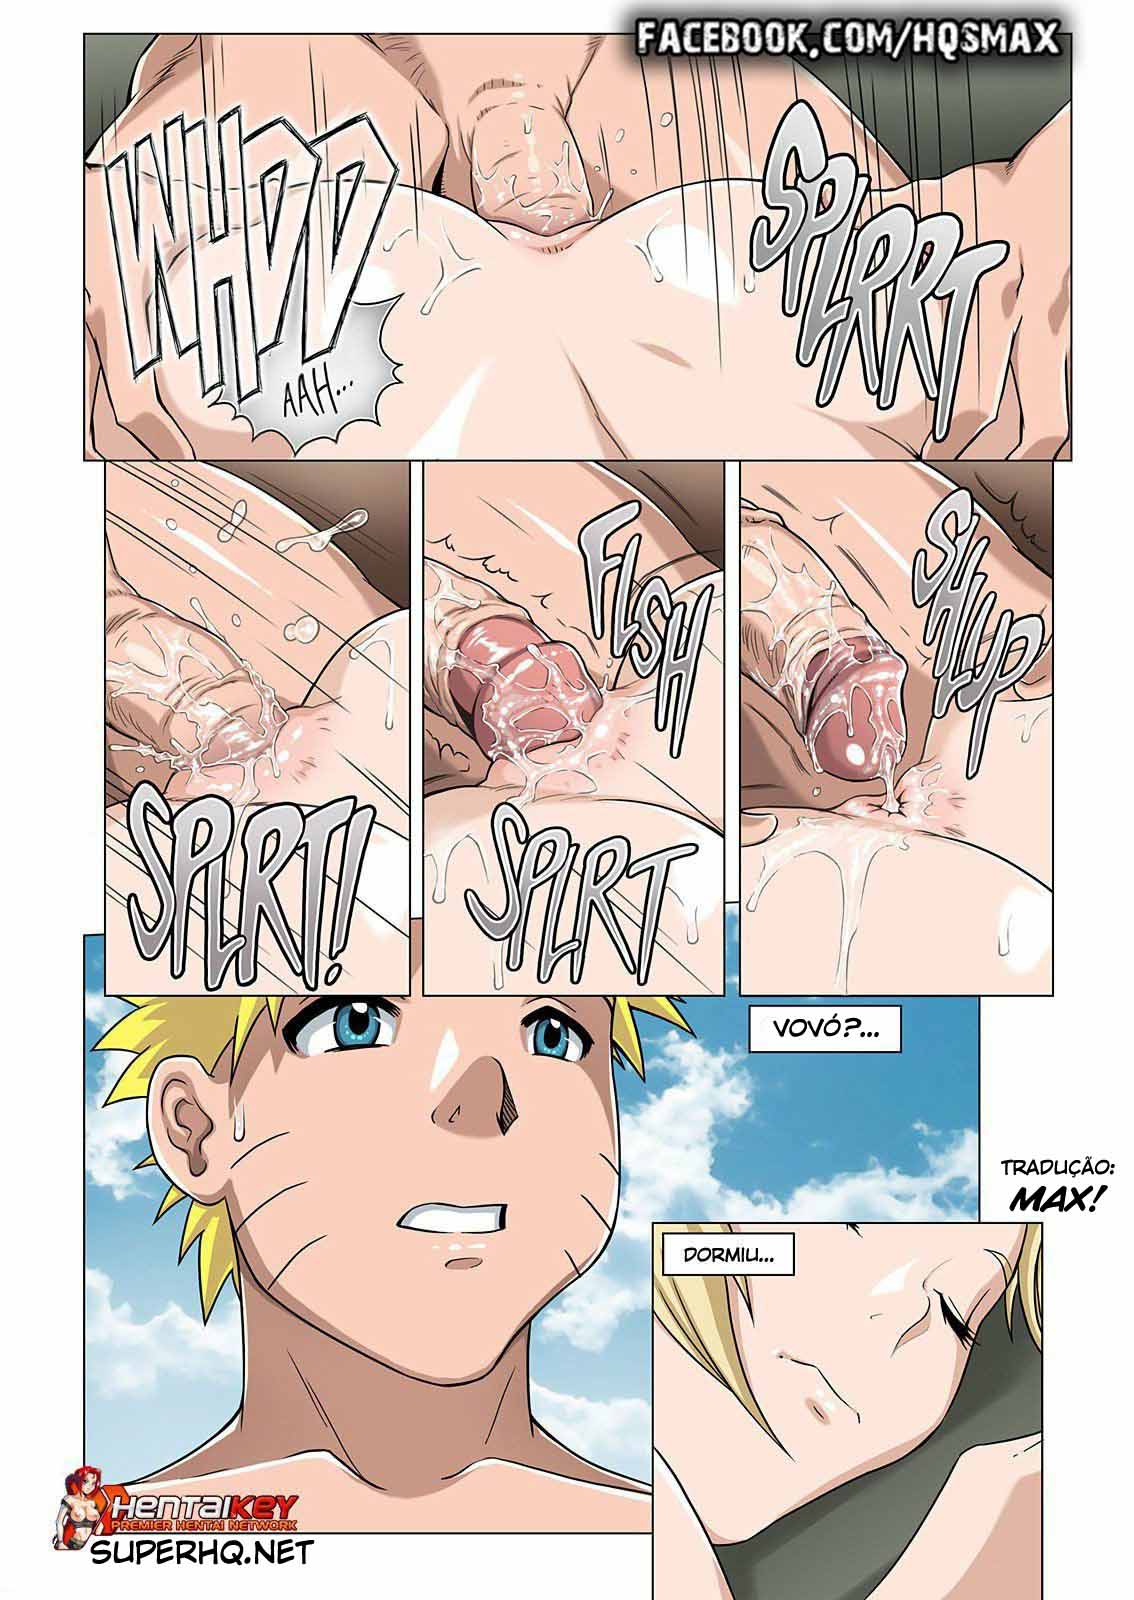 Naruto e Tsunade fazendo sexo